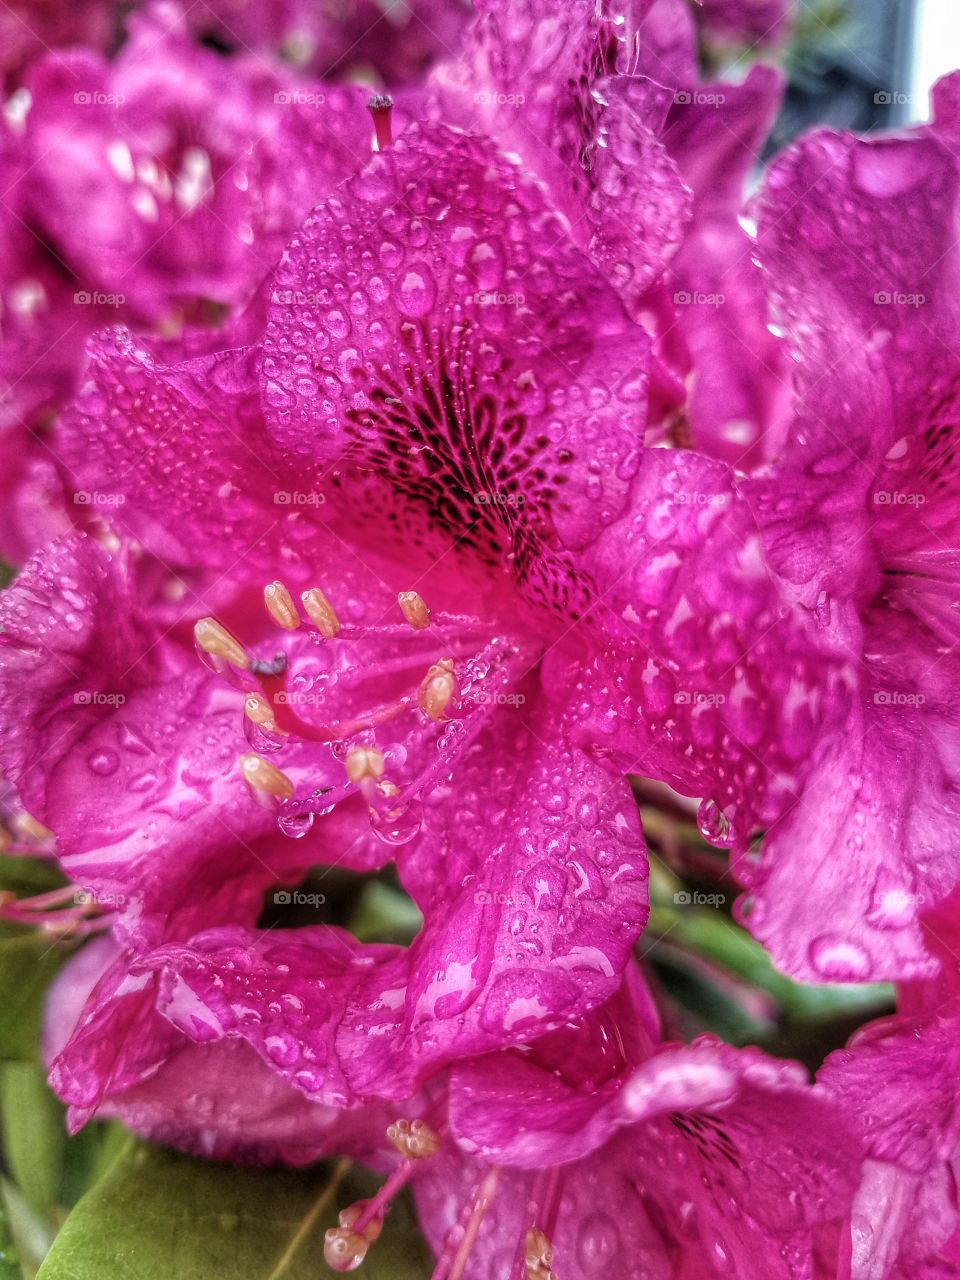 Dew Drops on Flowers